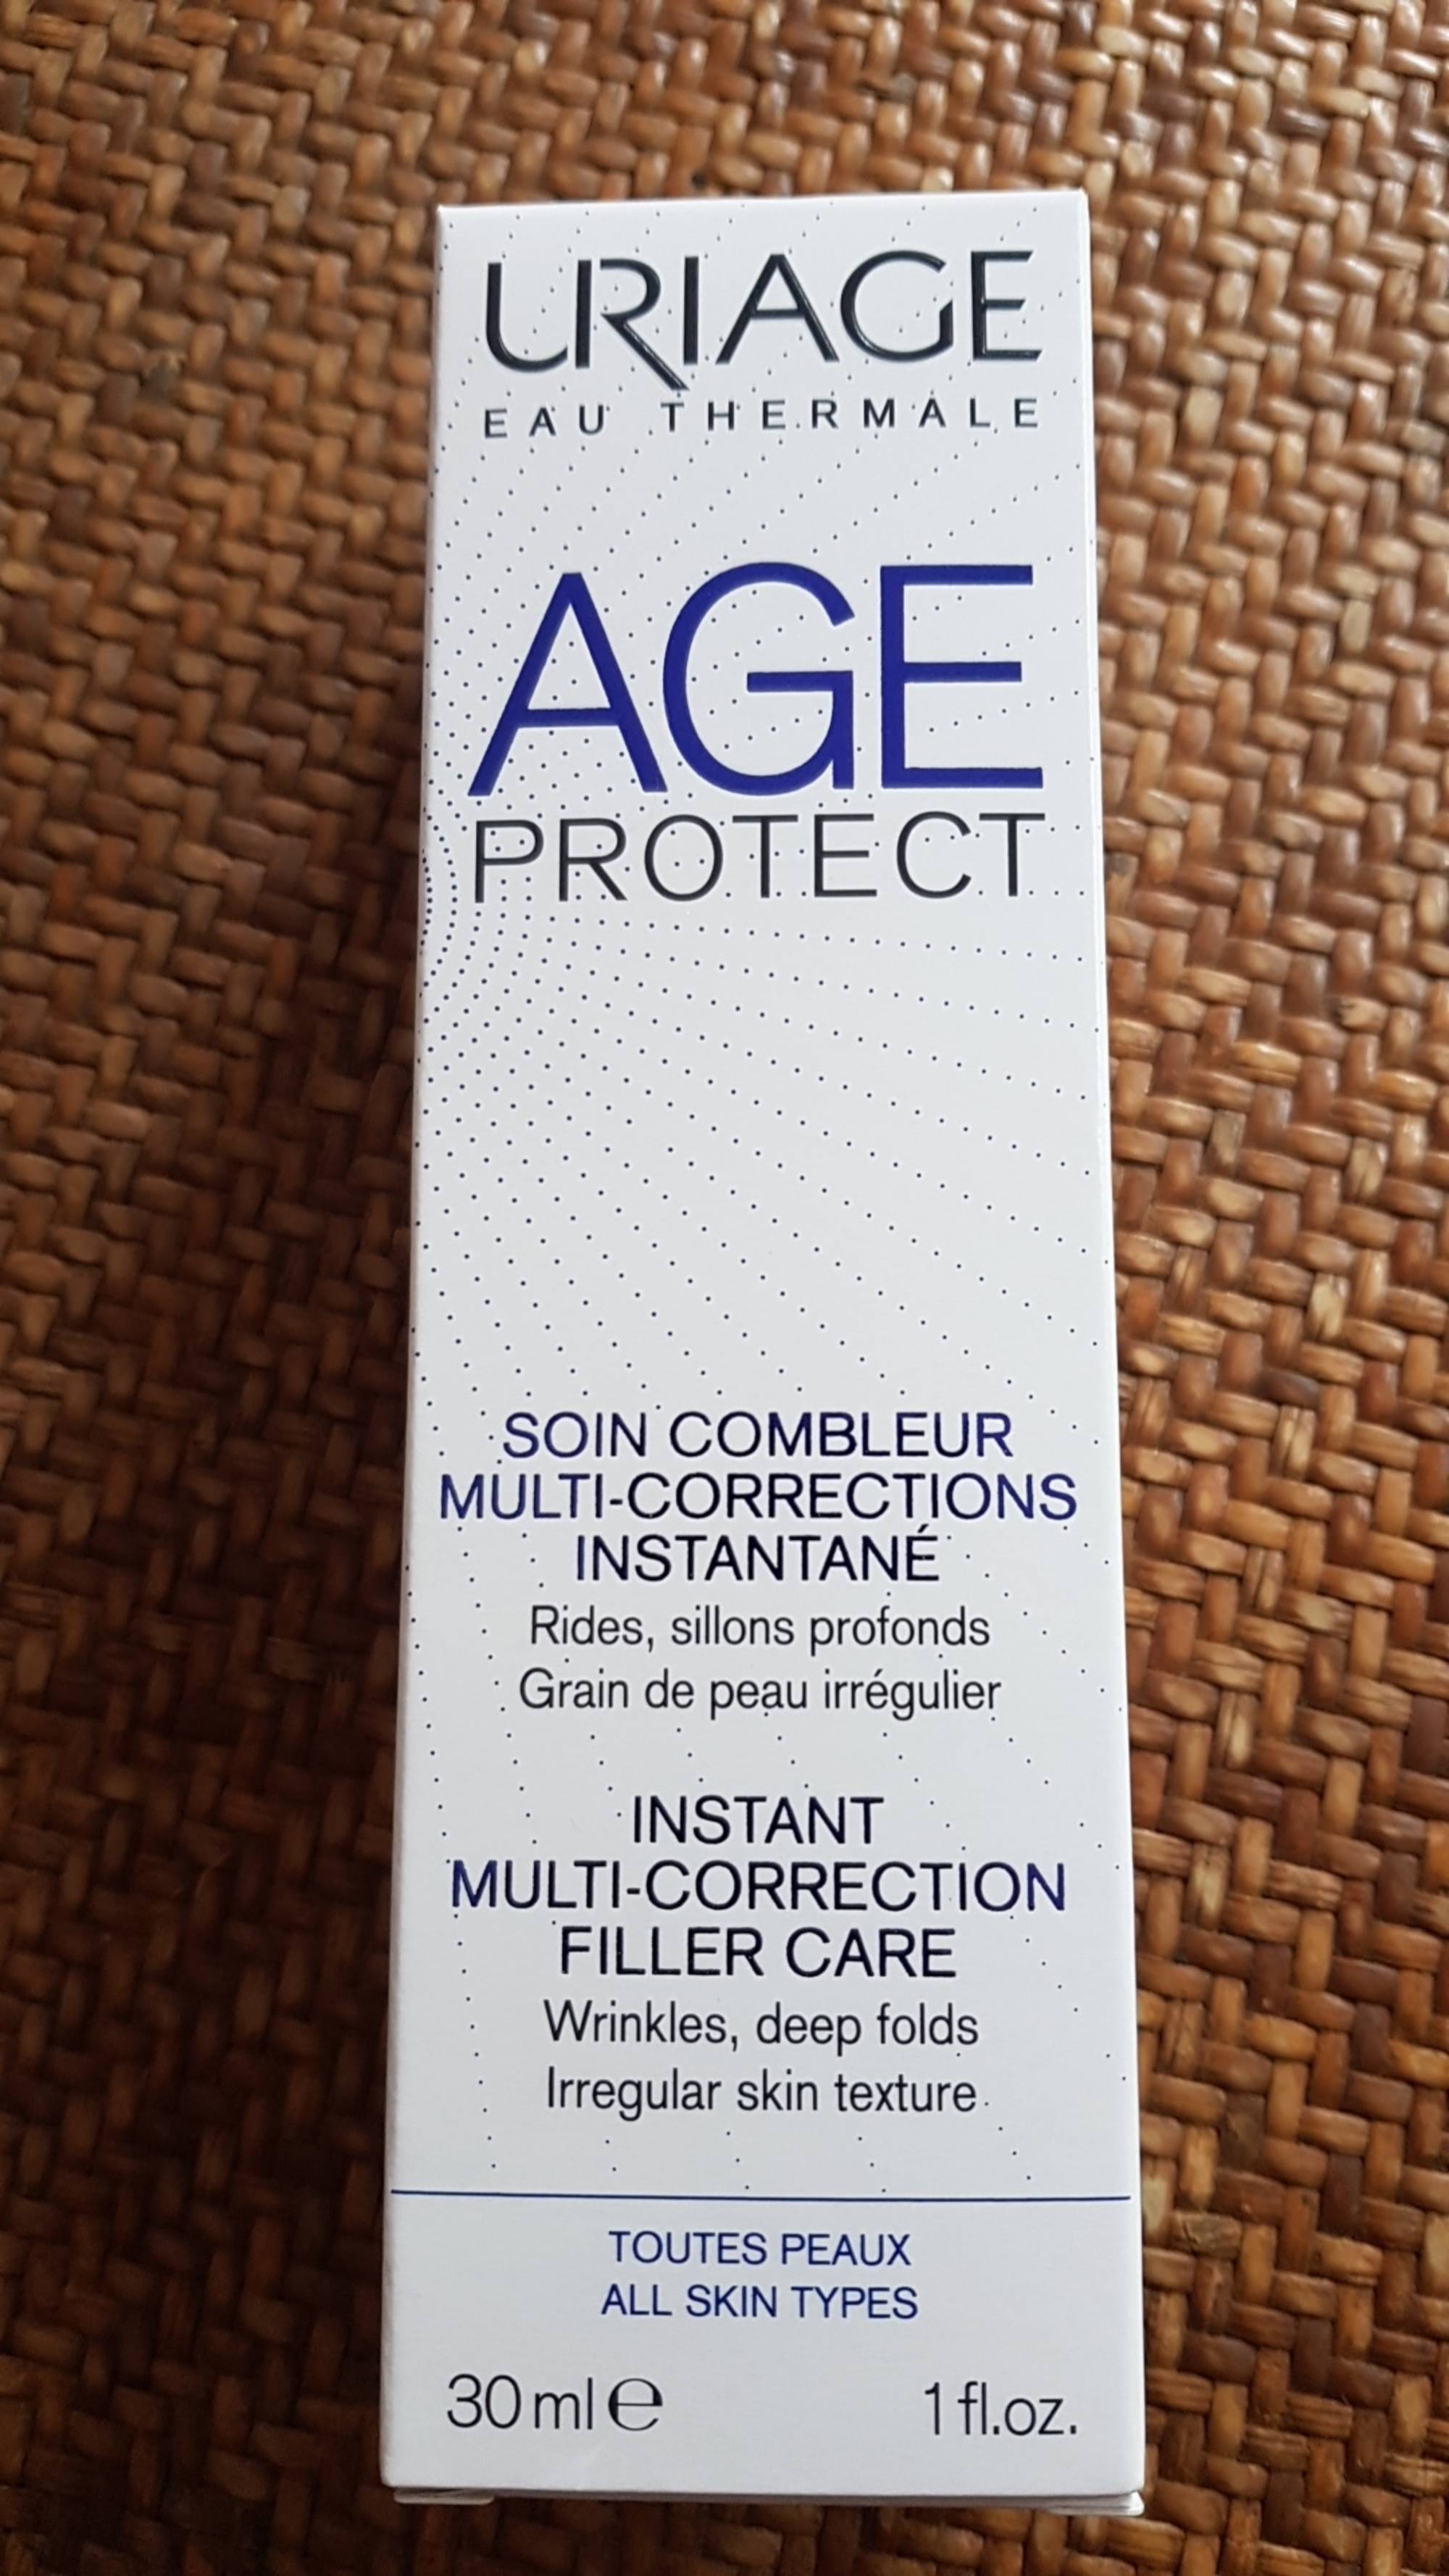 URIAGE - Age protect - Soin combleur multi-corrections instantané